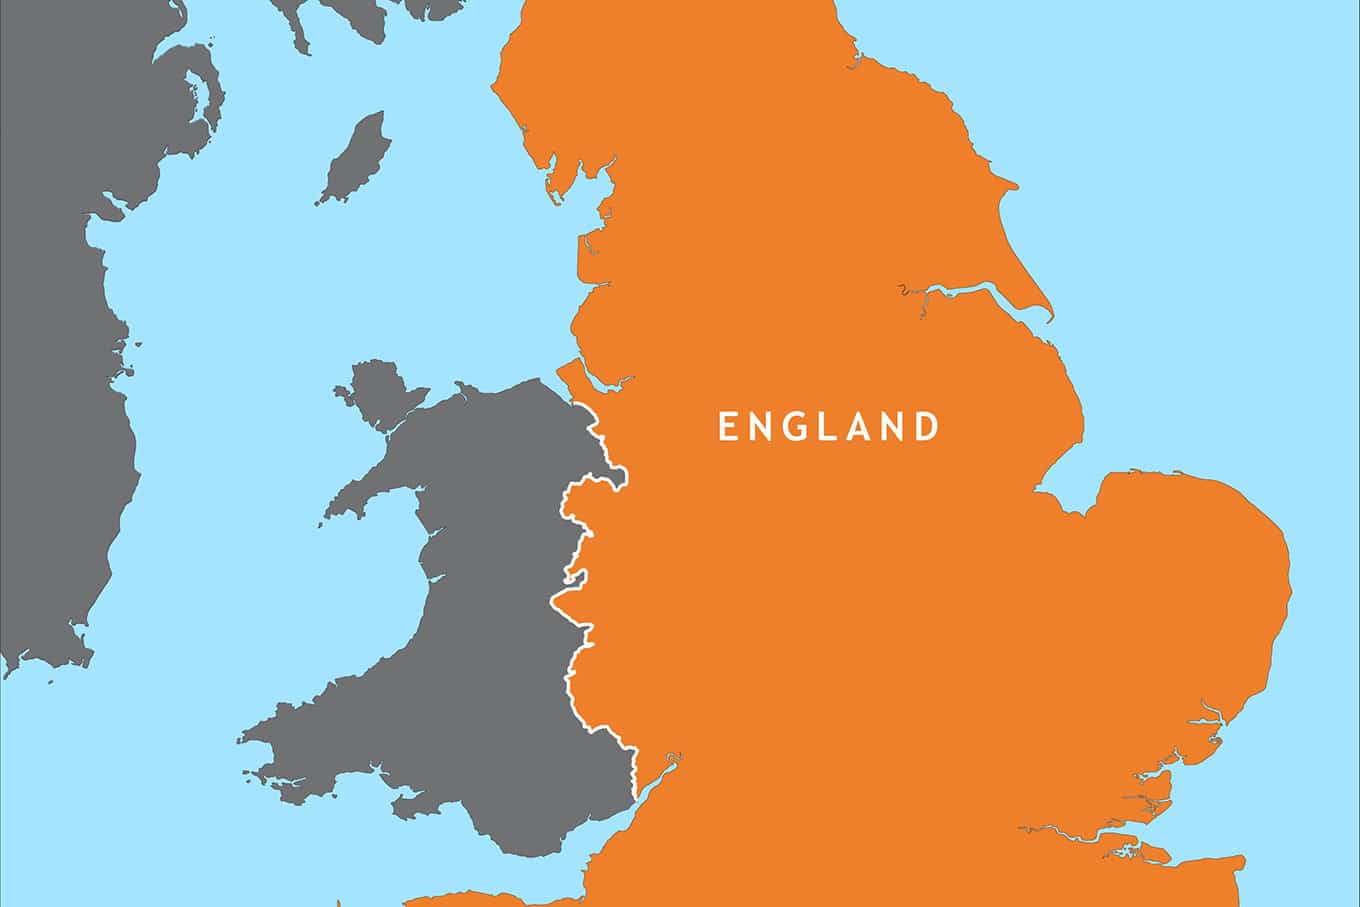 Mapa da Inglaterra, saiba onde fica o país como é o mapa e países vizinhos.